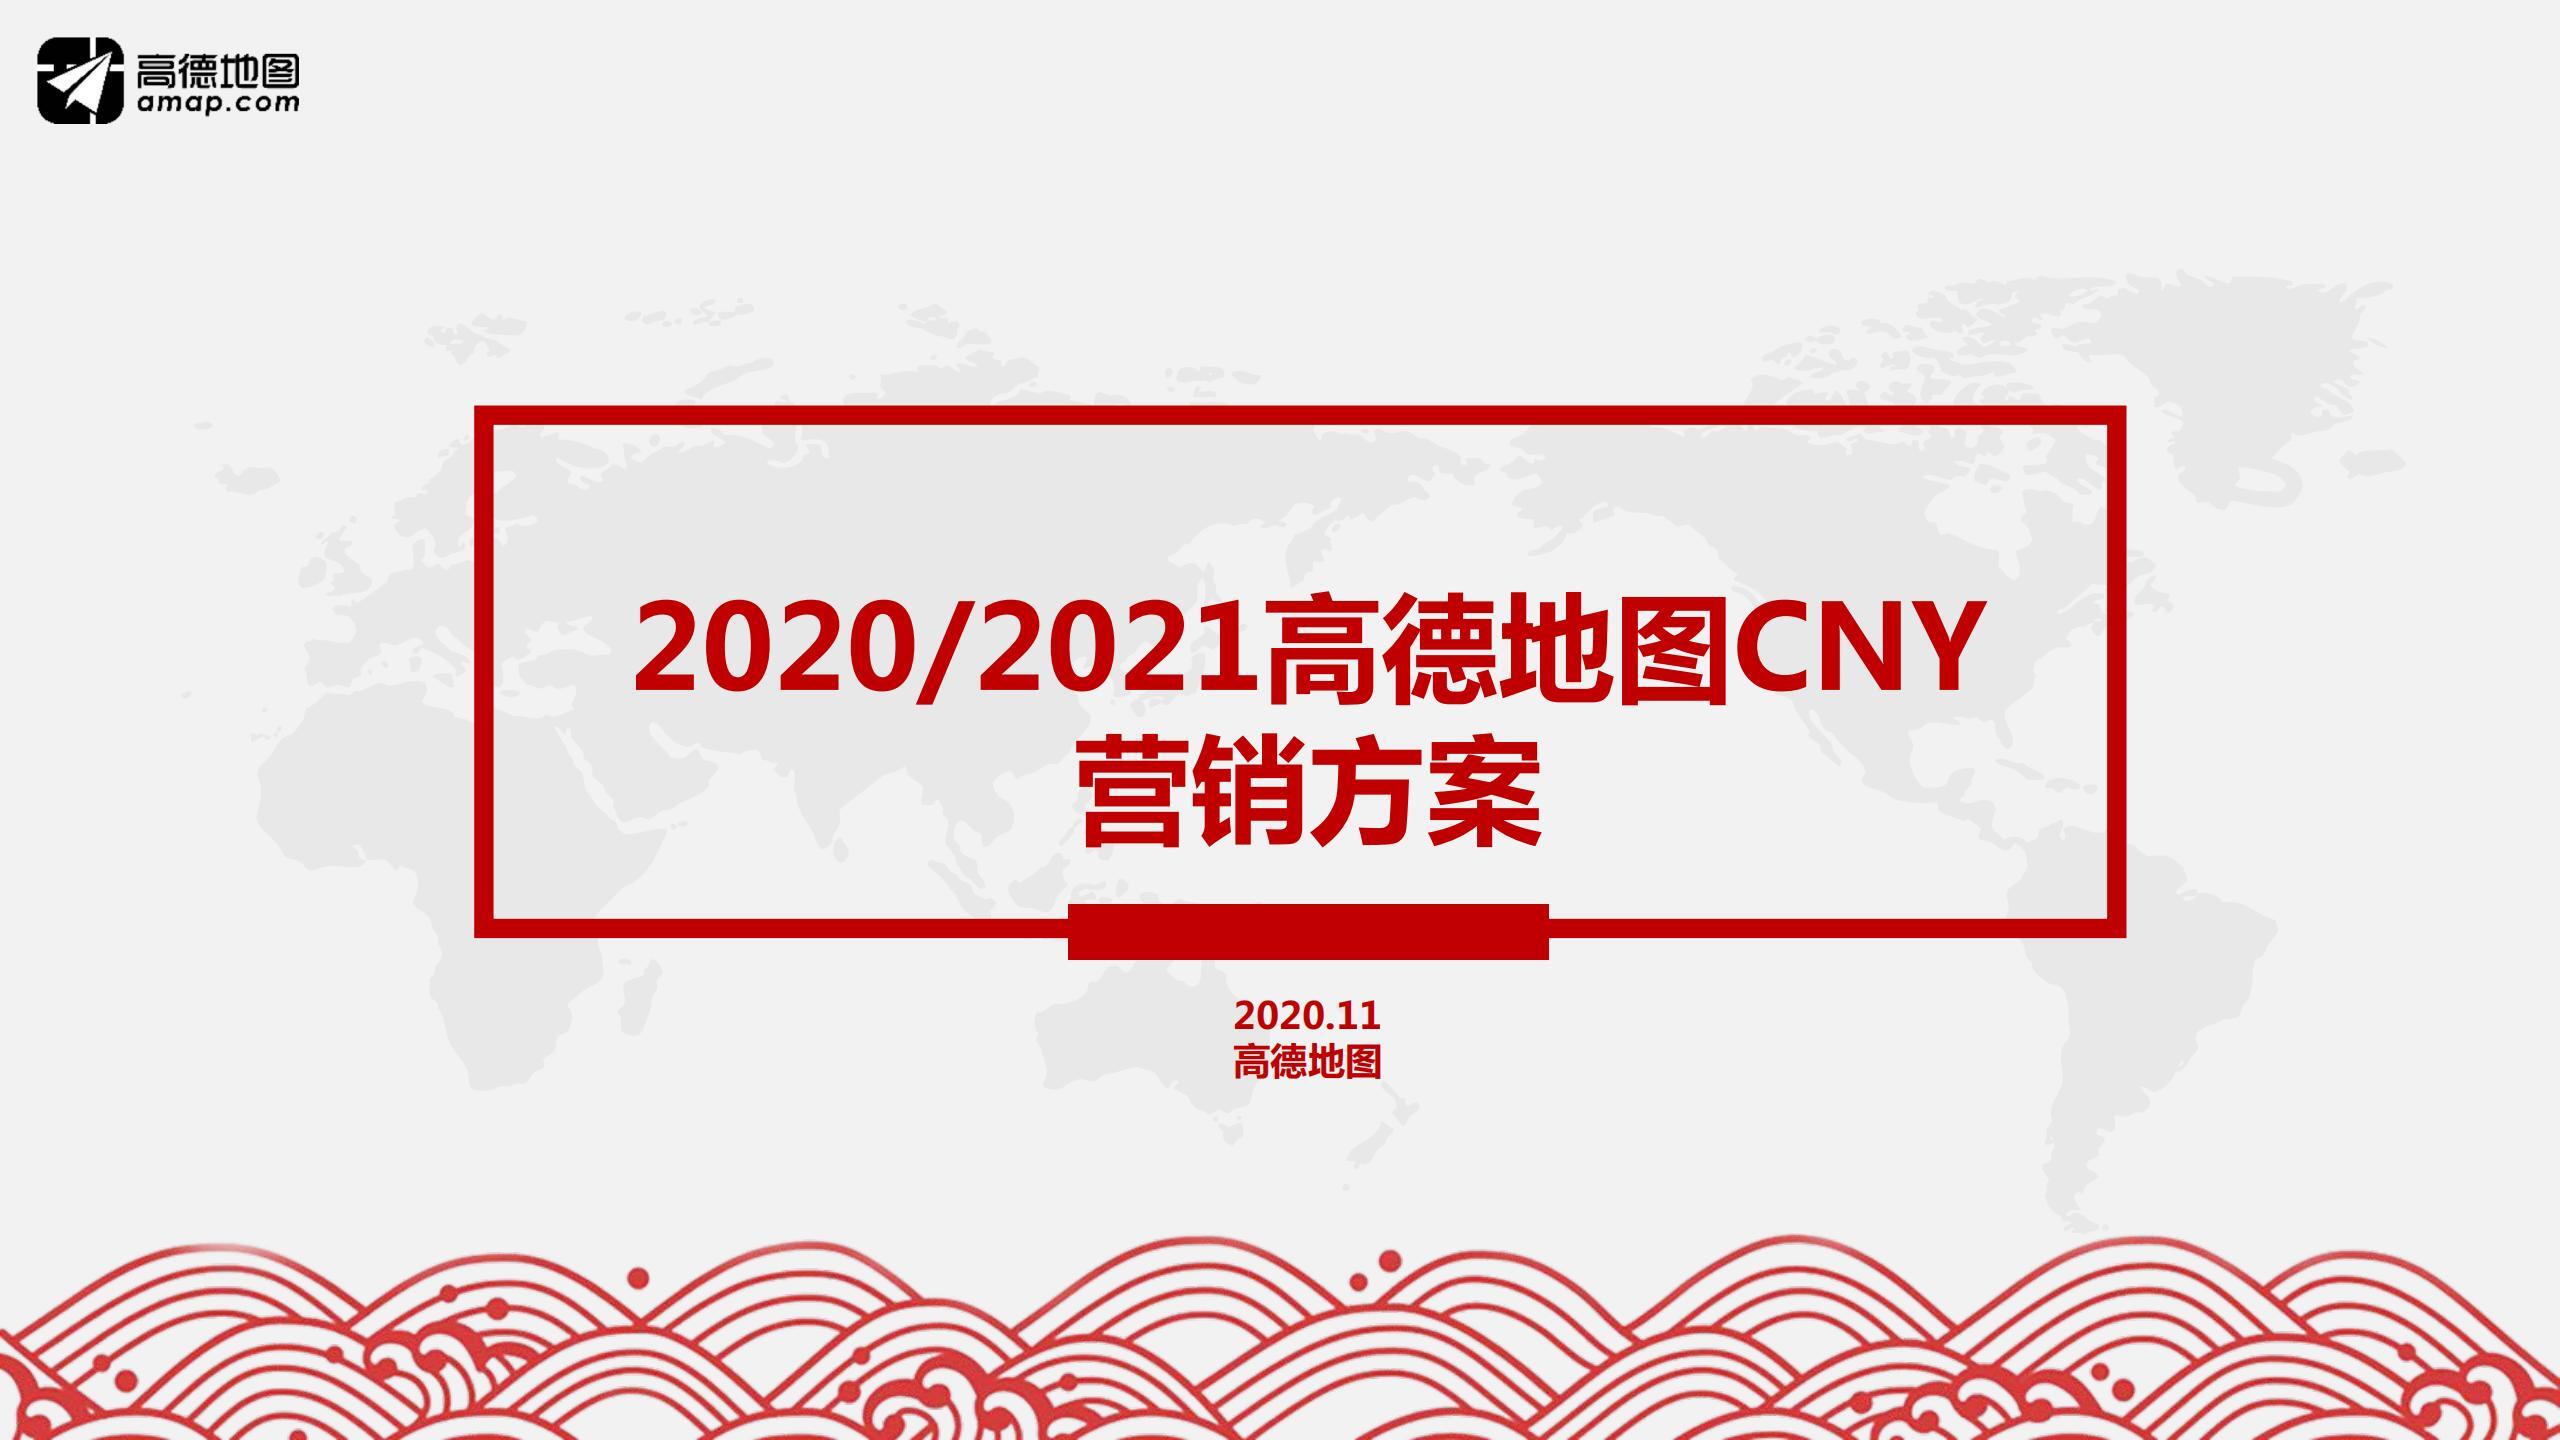 2021年高德地图CNY招商方案